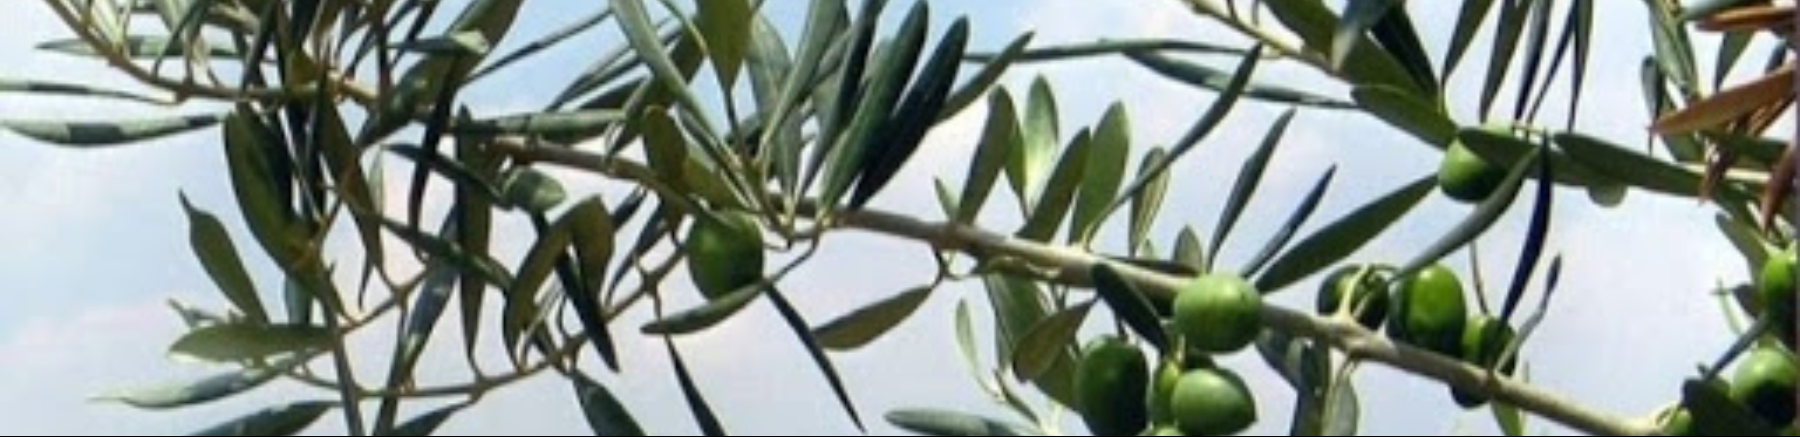 1 olivo-potatura, difesa e concimazione: Immagine Header